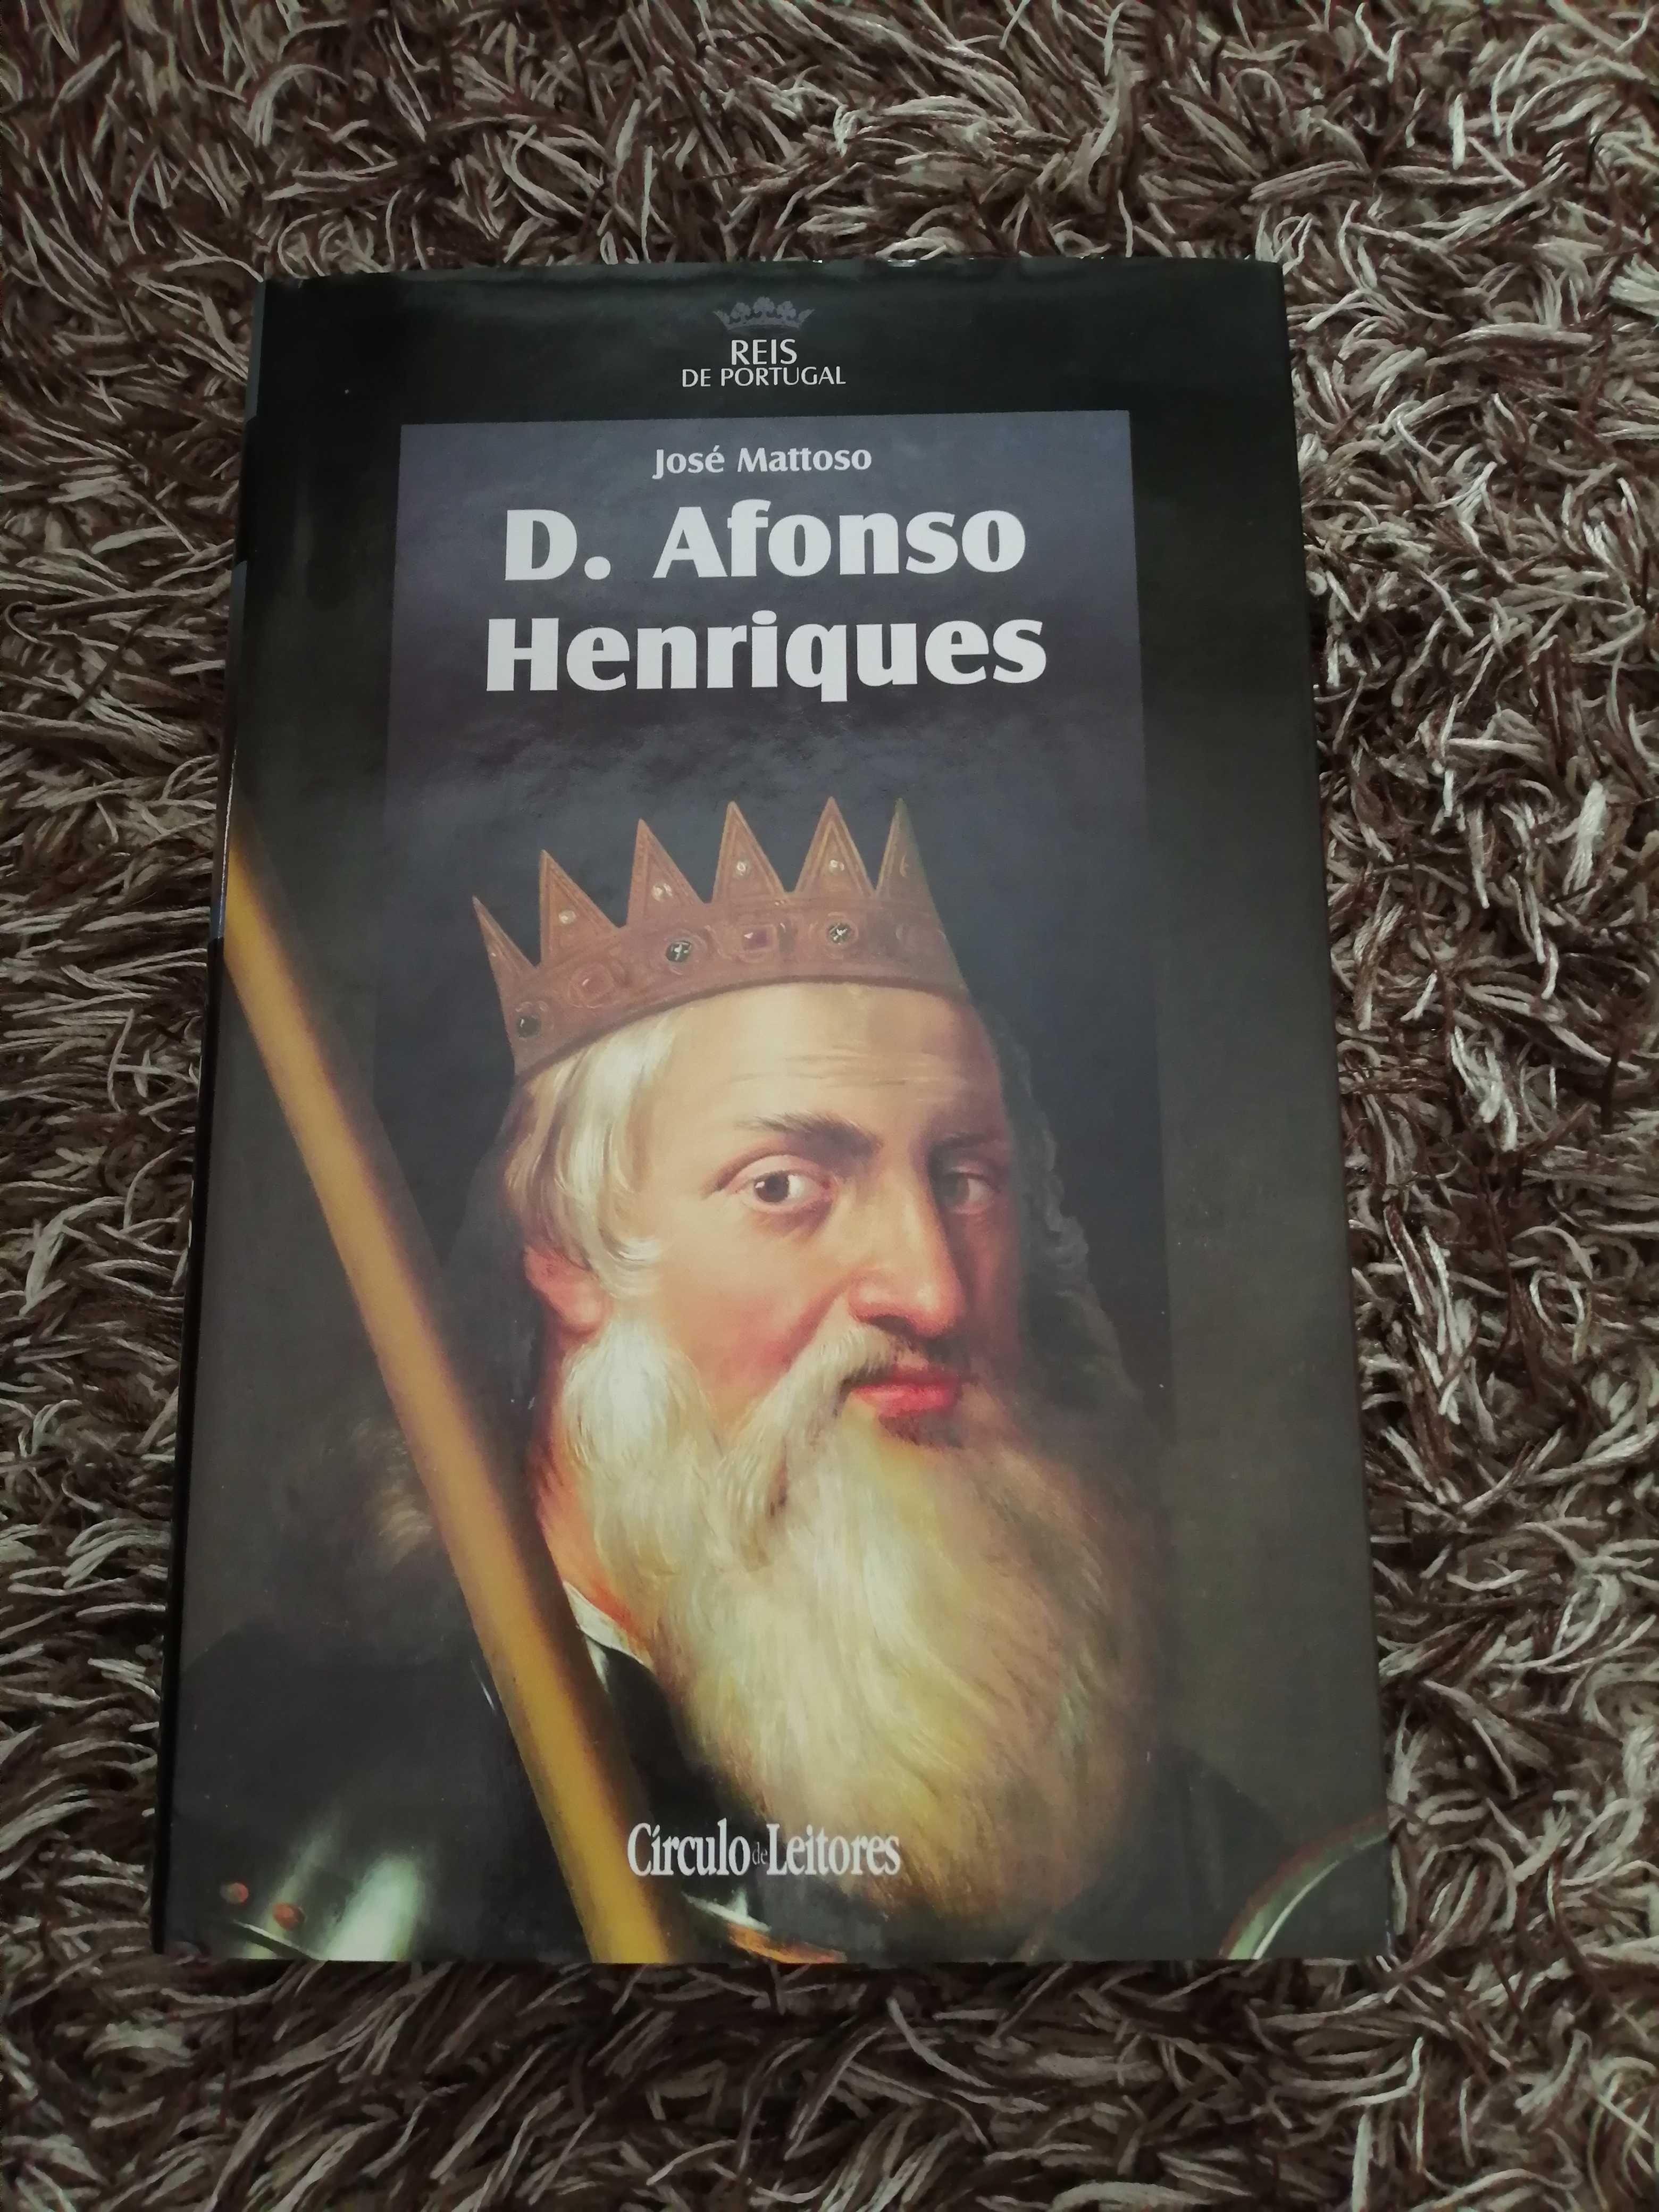 Reis de Portugal - Coleção Completa - Círculo Leitores